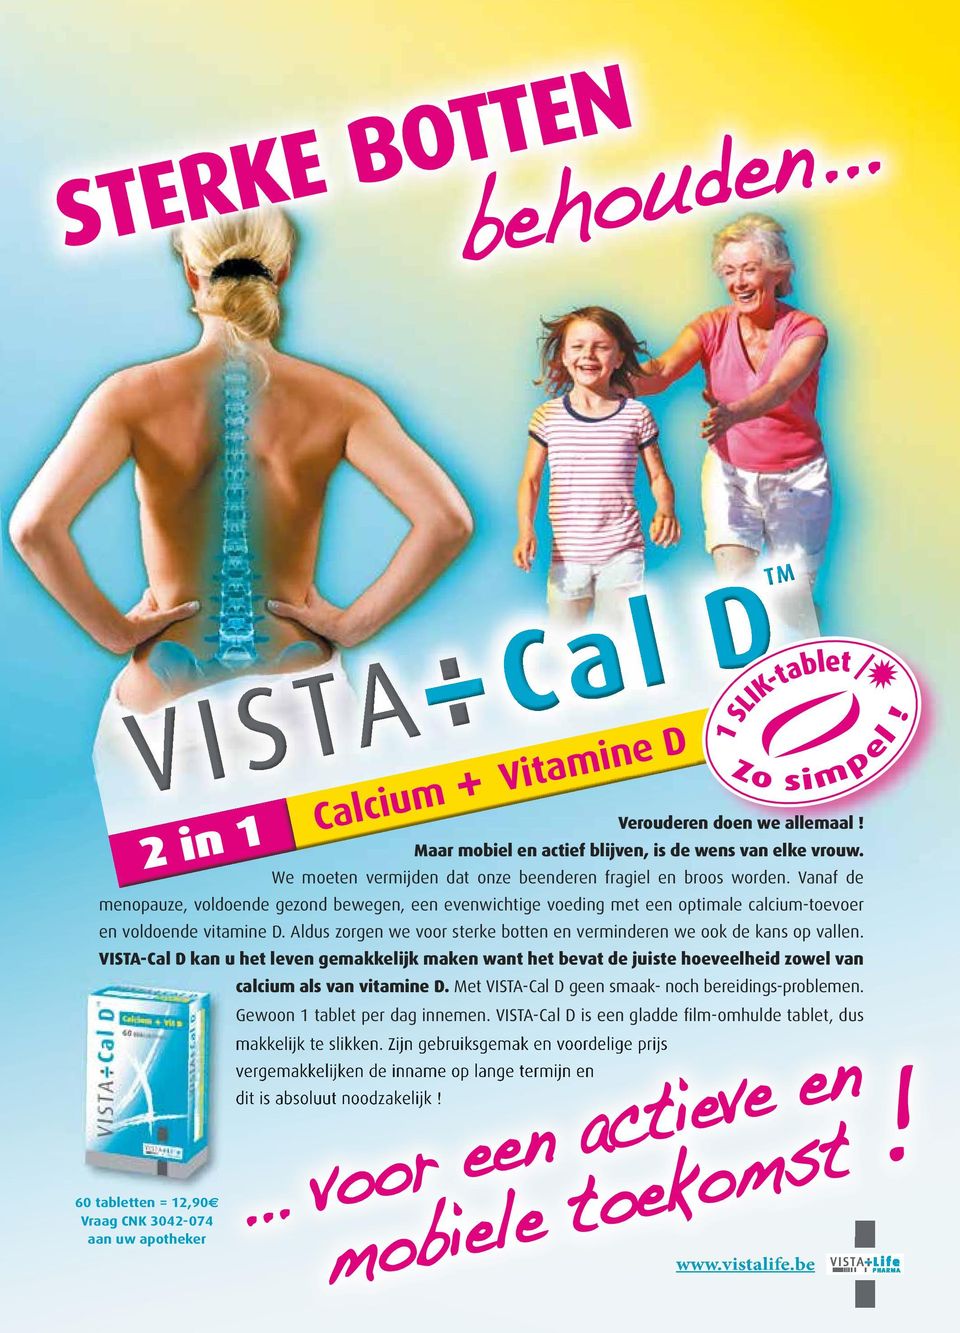 Aldus zorgen we voor sterke botten en verminderen we ook de kans op vallen. VISTA-Cal D kan u het leven gemakkelijk maken want het bevat de juiste hoeveelheid zowel van calcium als van vitamine D.